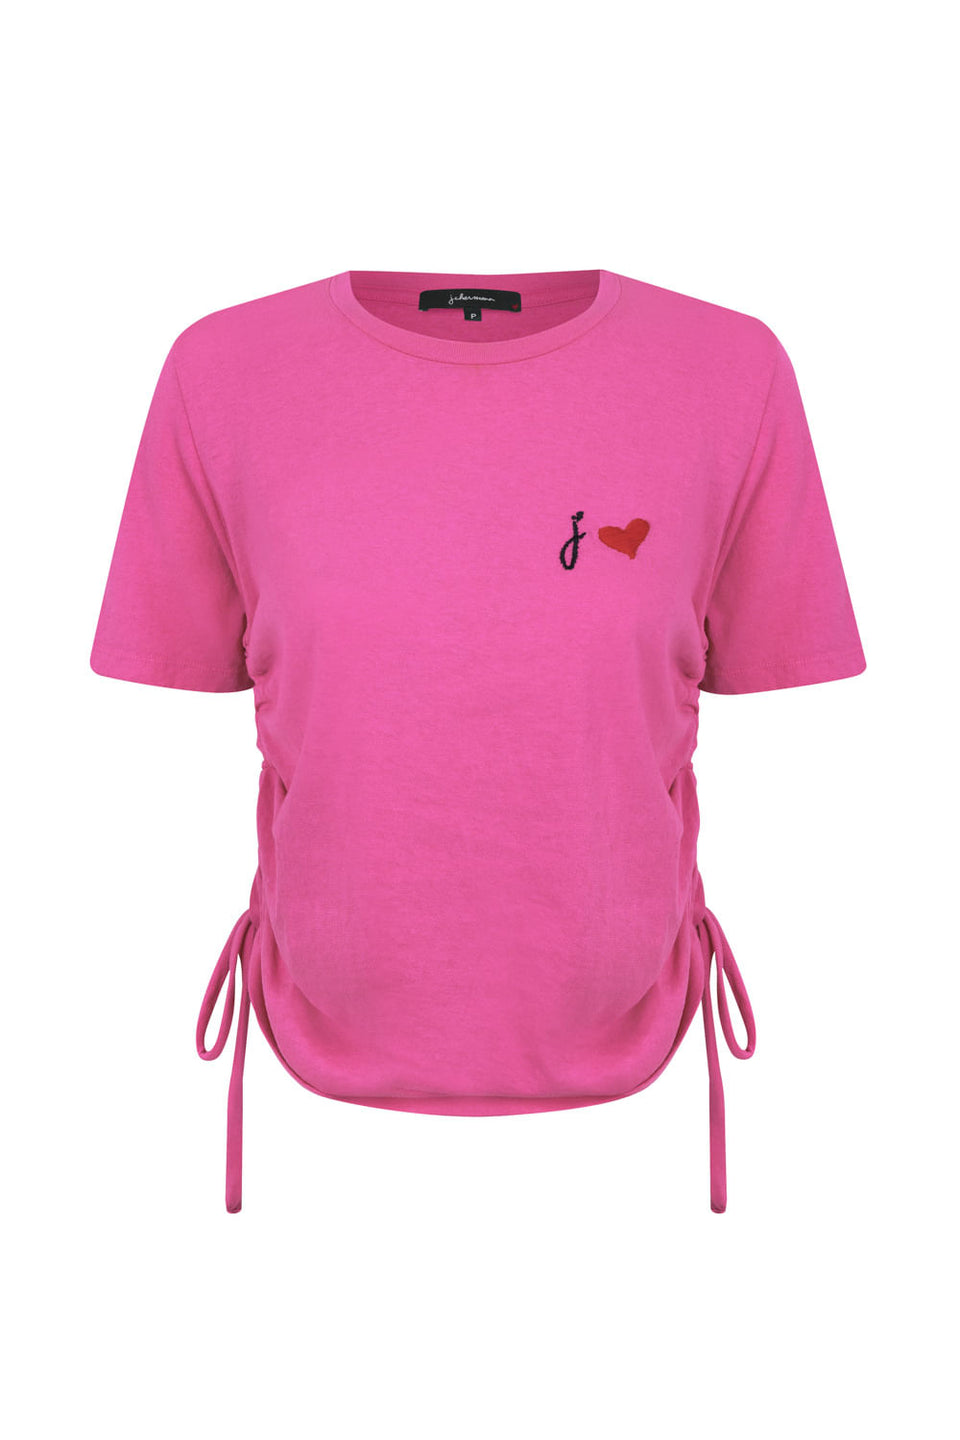 Camiseta 2 Amarrações Rosa